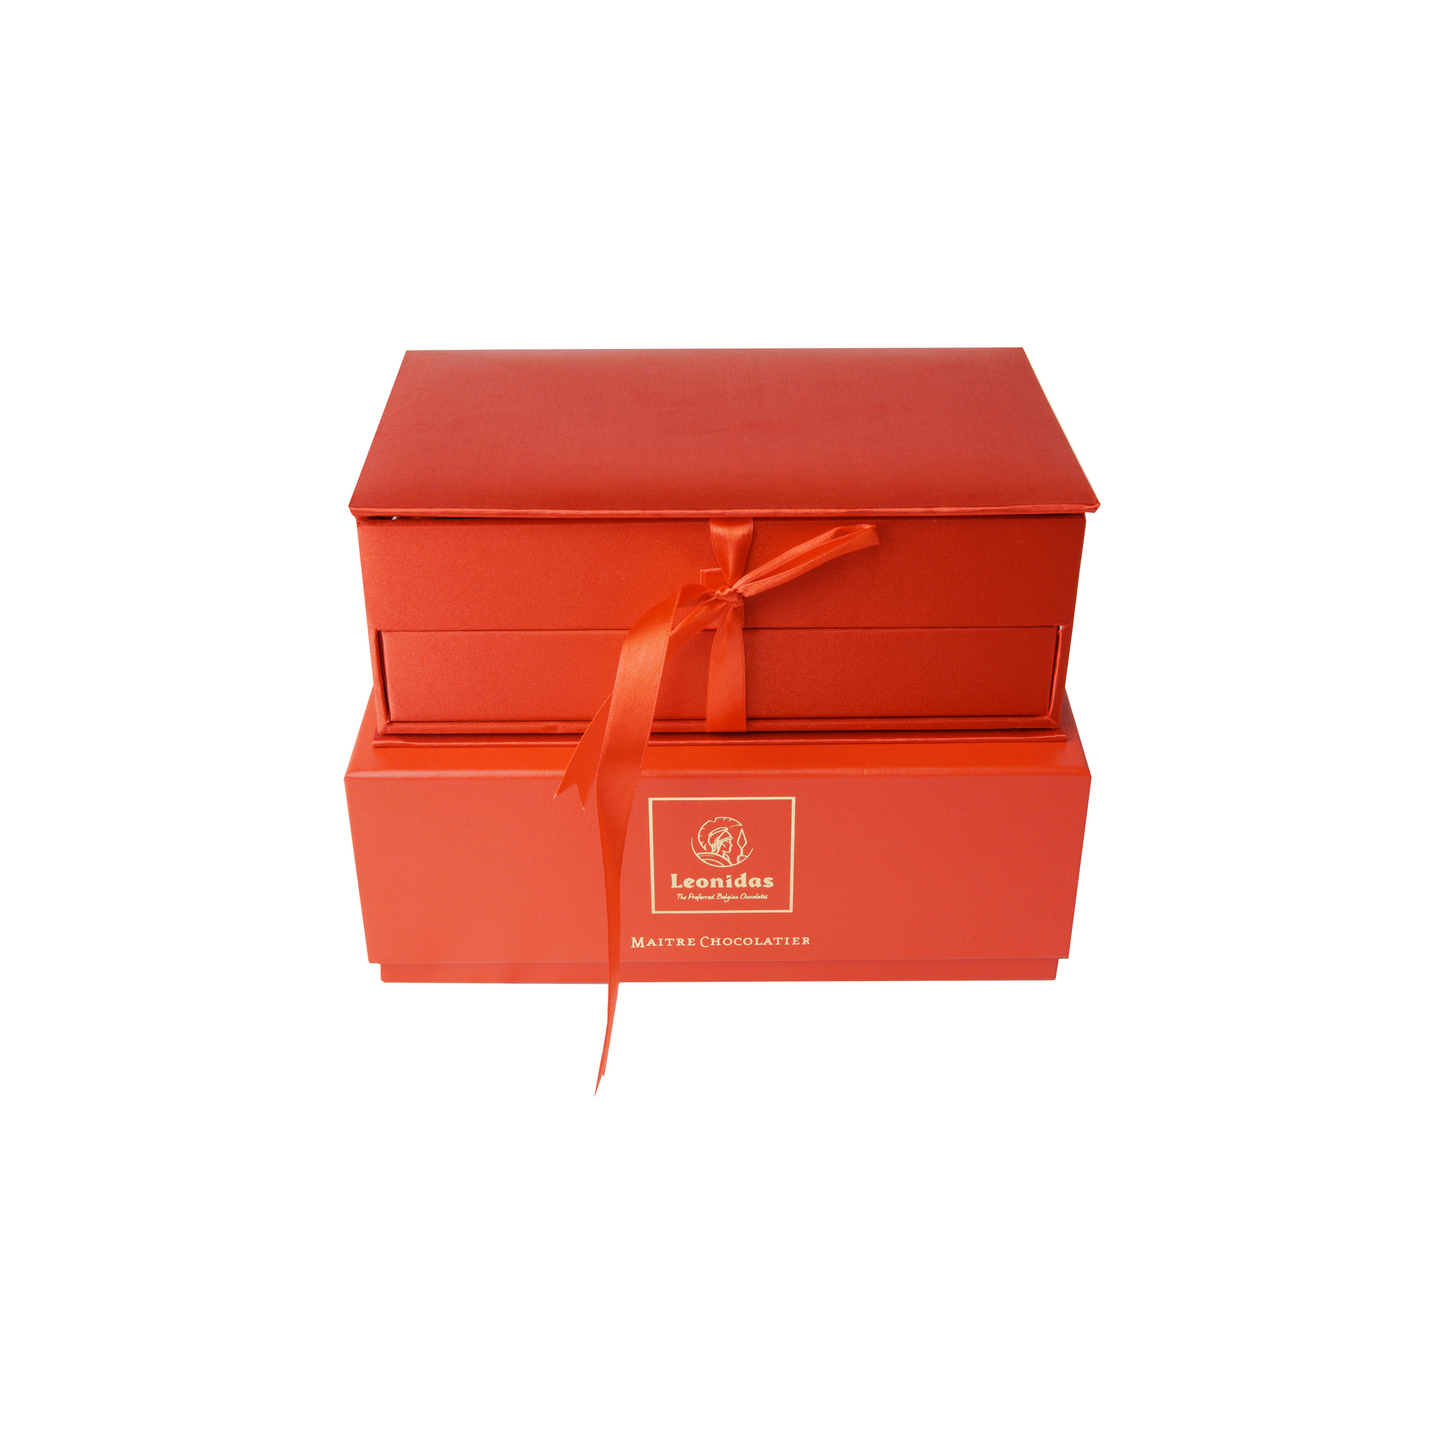 Boite de Chocolats à Bijoux de Luxe Leonidas-Boites-Cadeaux Leonidas-